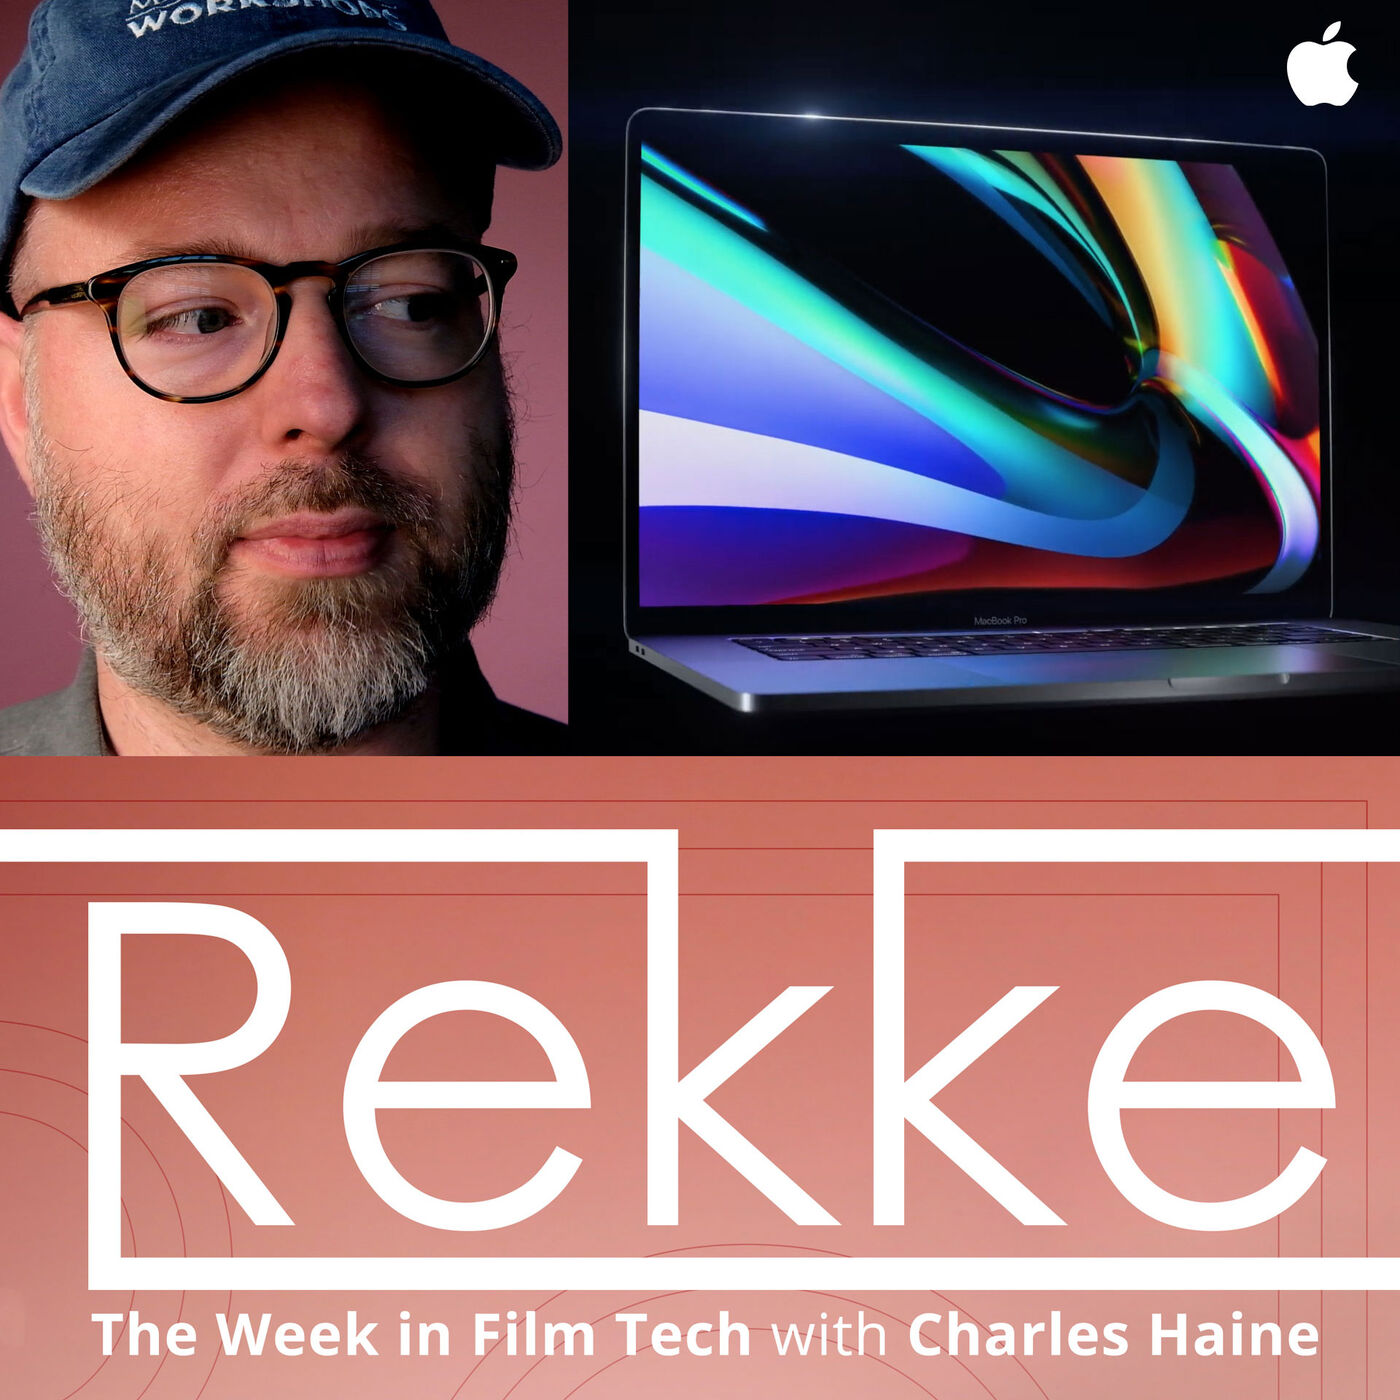 Nov 14, 2019 - Apple 16" MacBook Pro (Episode 1x31)